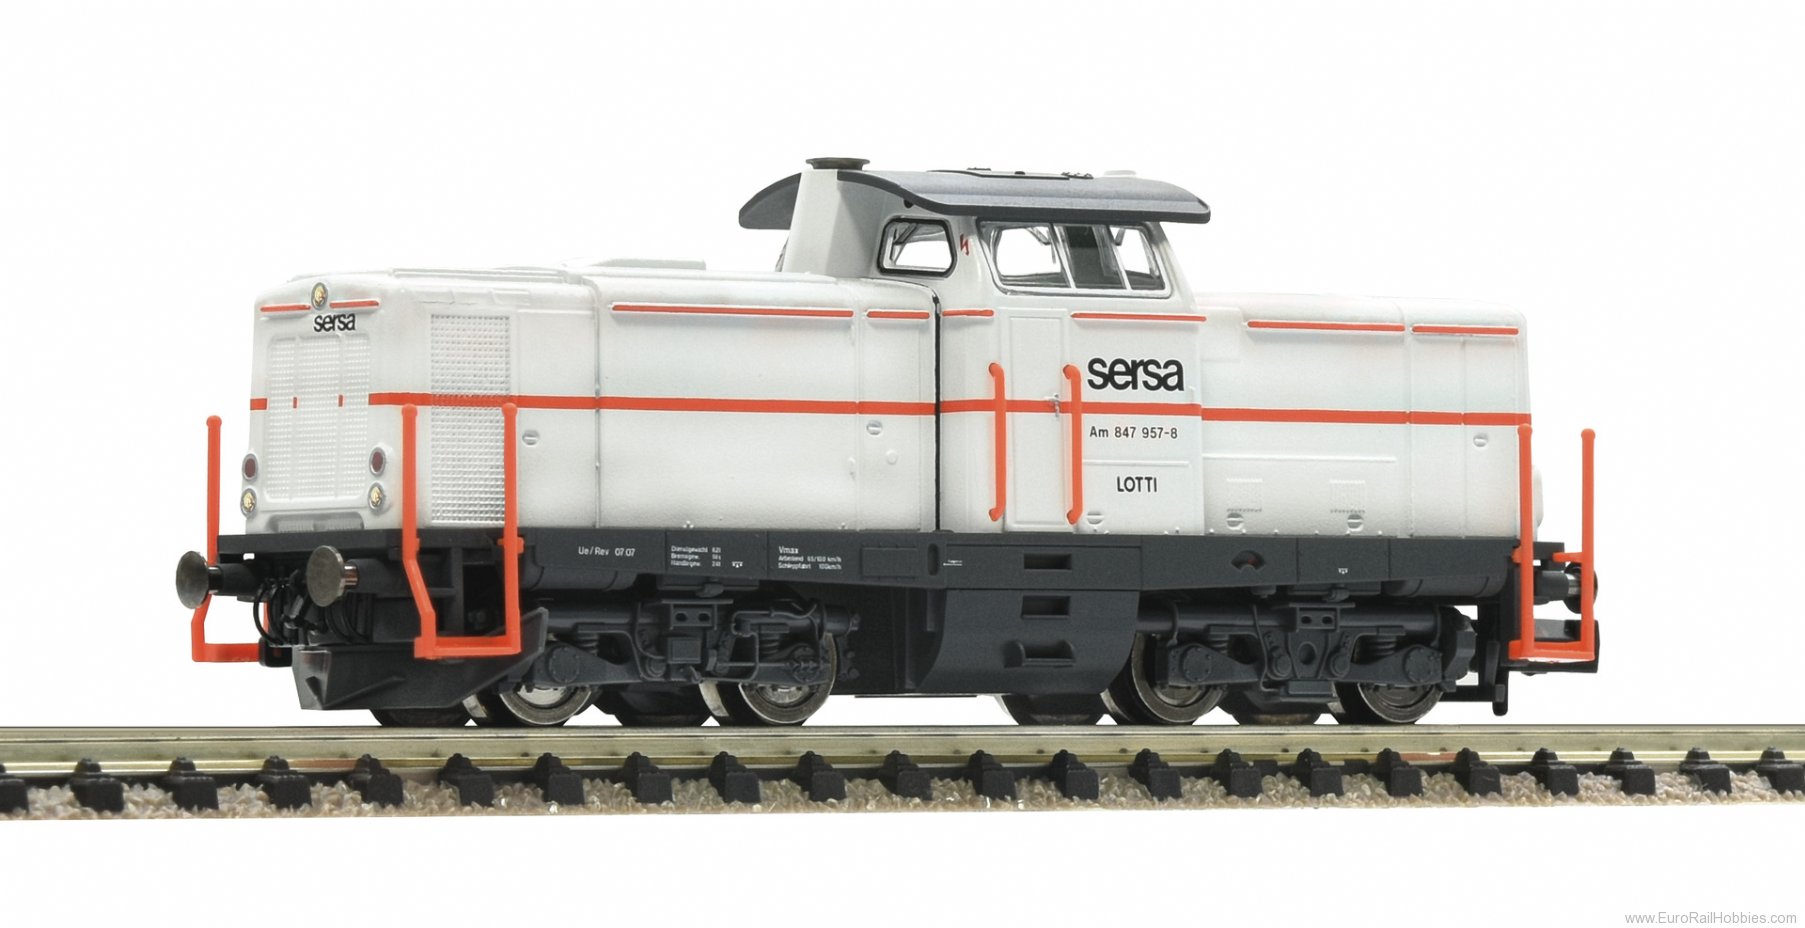 Fleischmann 721282 Diesel locomotive Am 847 957-8, SERSA (DCC So